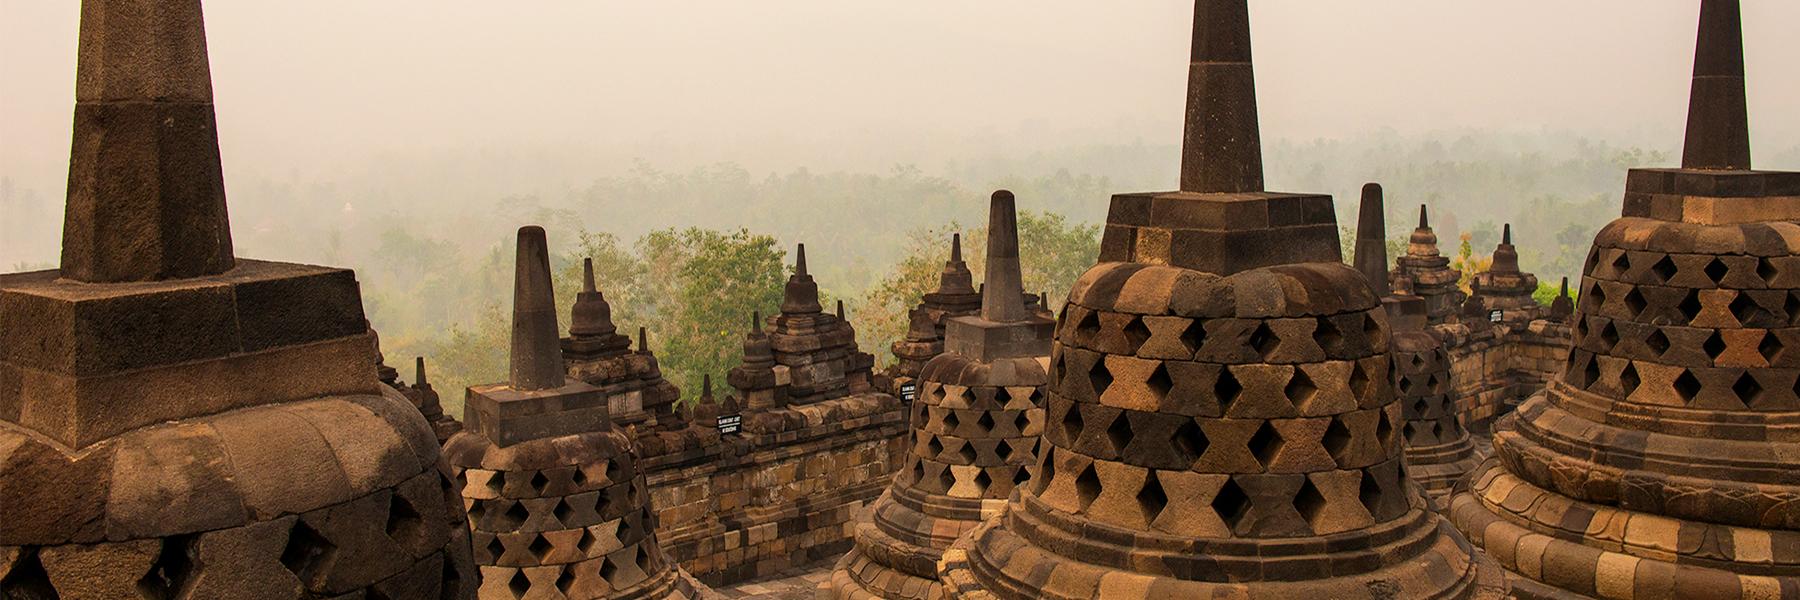 Why Visit Borobudur?